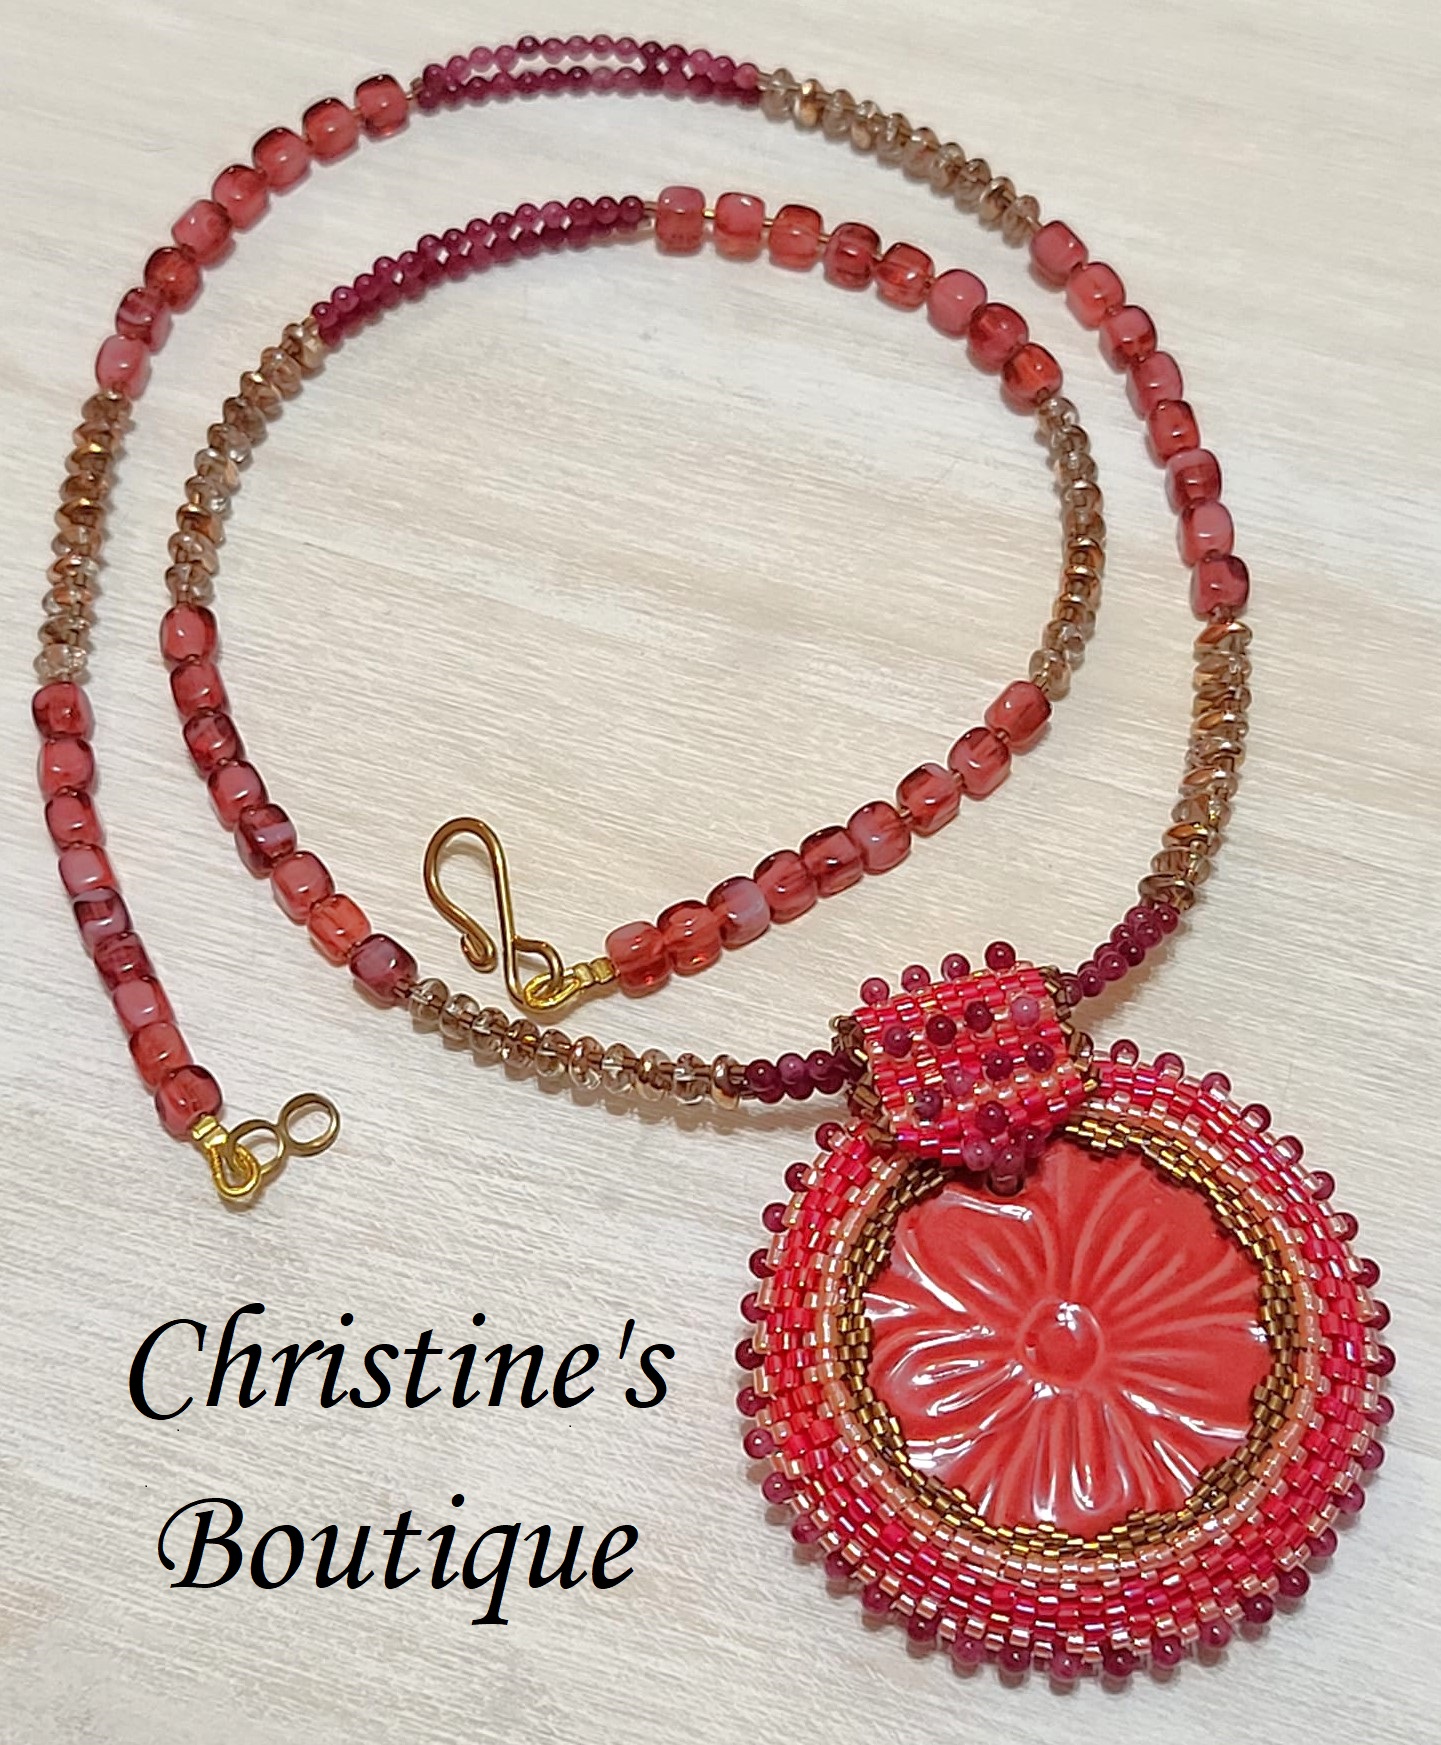 Gemstone necklace, cherry quartz with center ceramic medalion - Click Image to Close